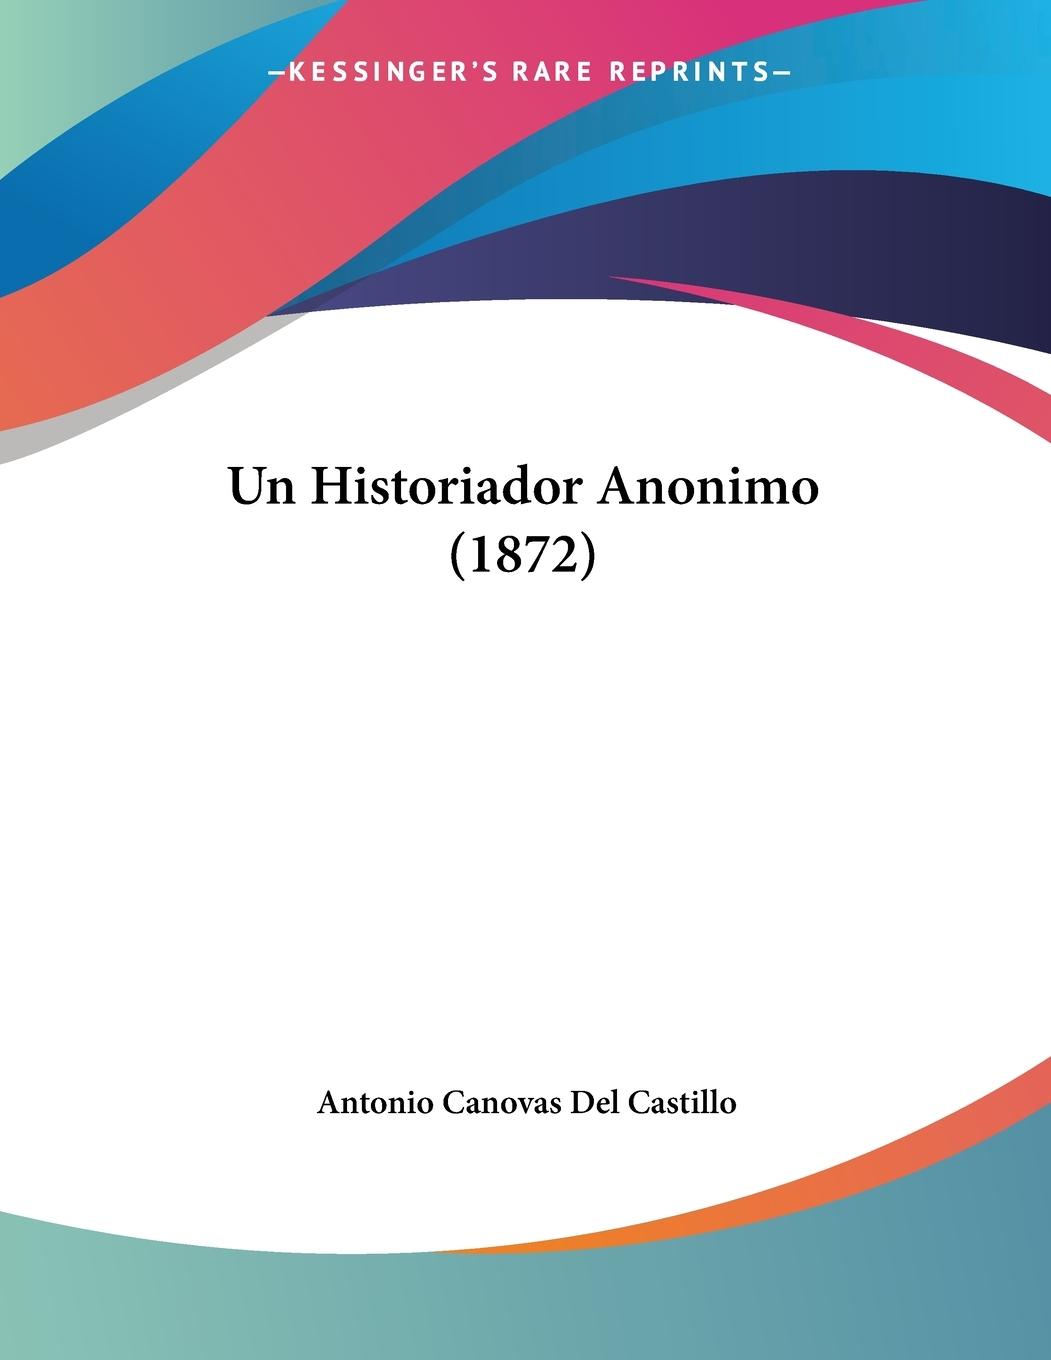 Un Historiador Anonimo (1872) - Del Castillo, Antonio Canovas